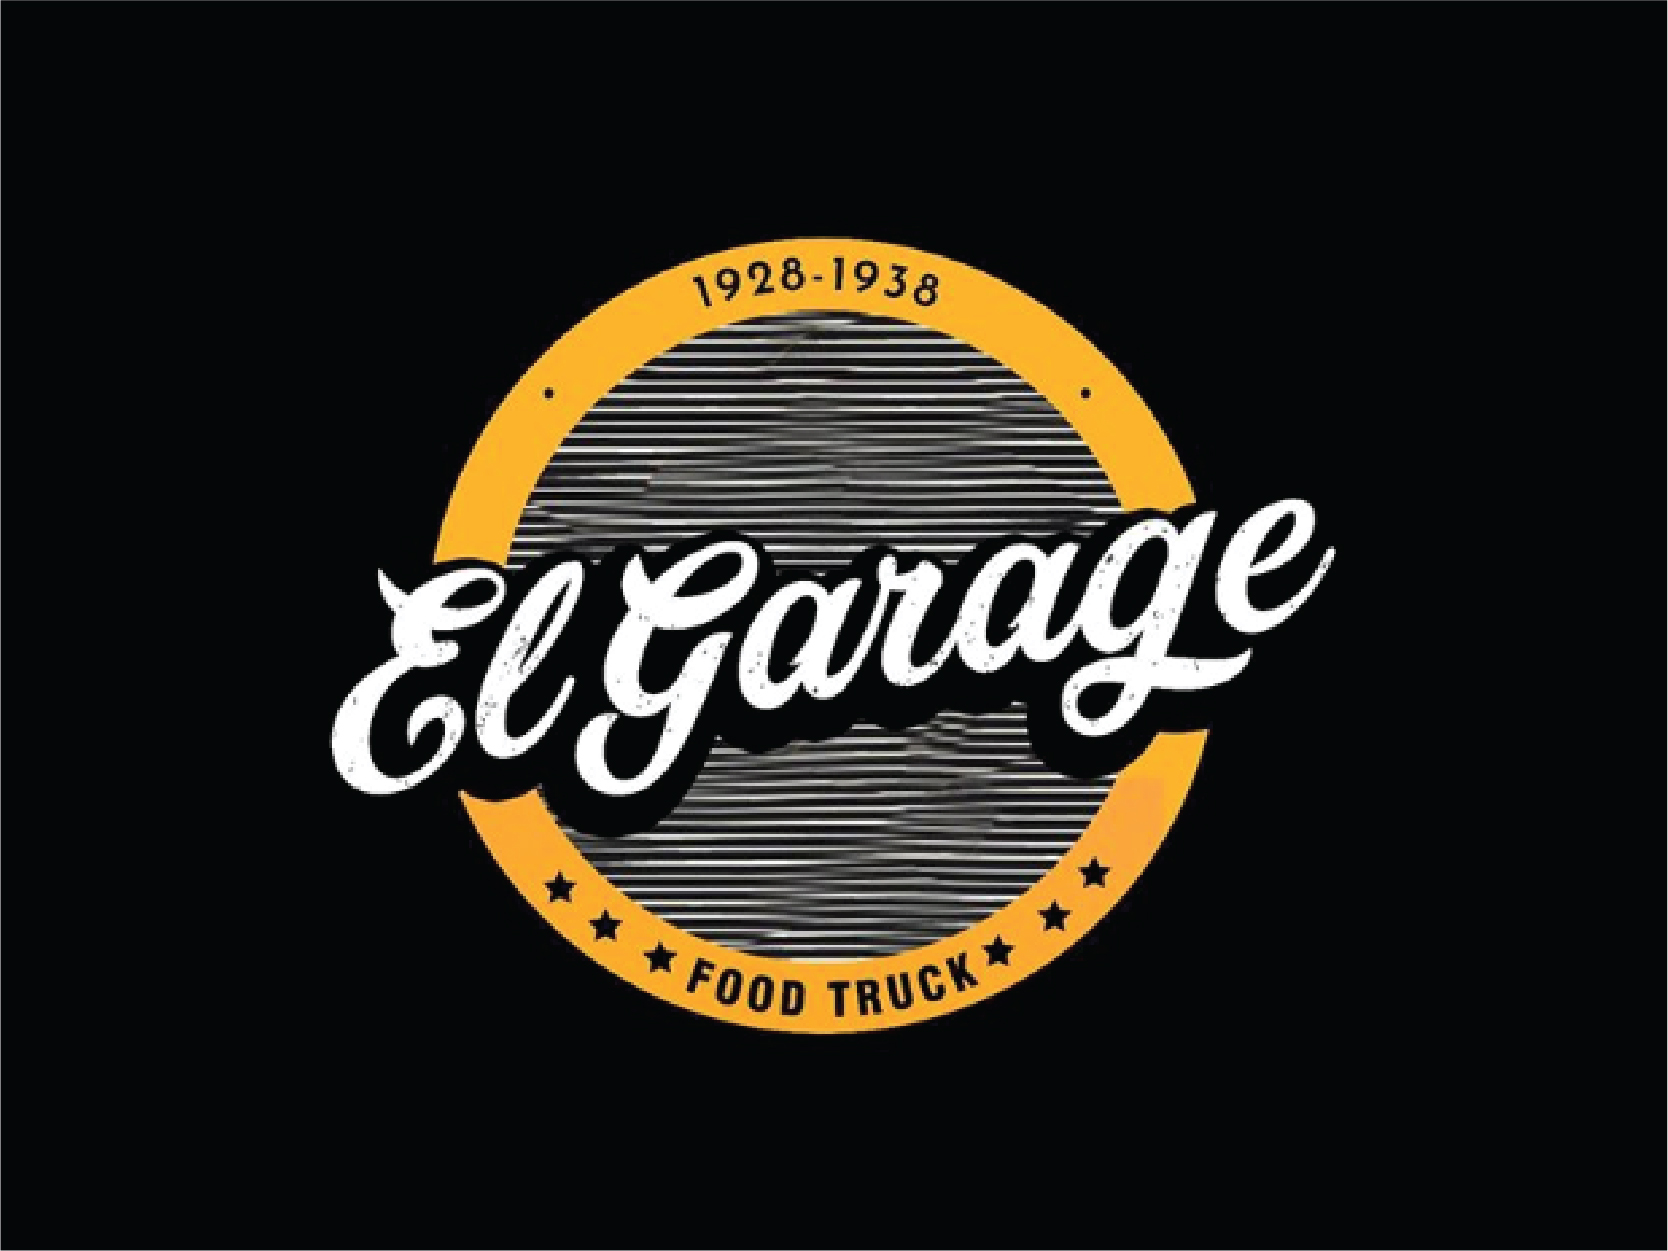 EL GARAGE RESTO BAR & FOOD TRUCK